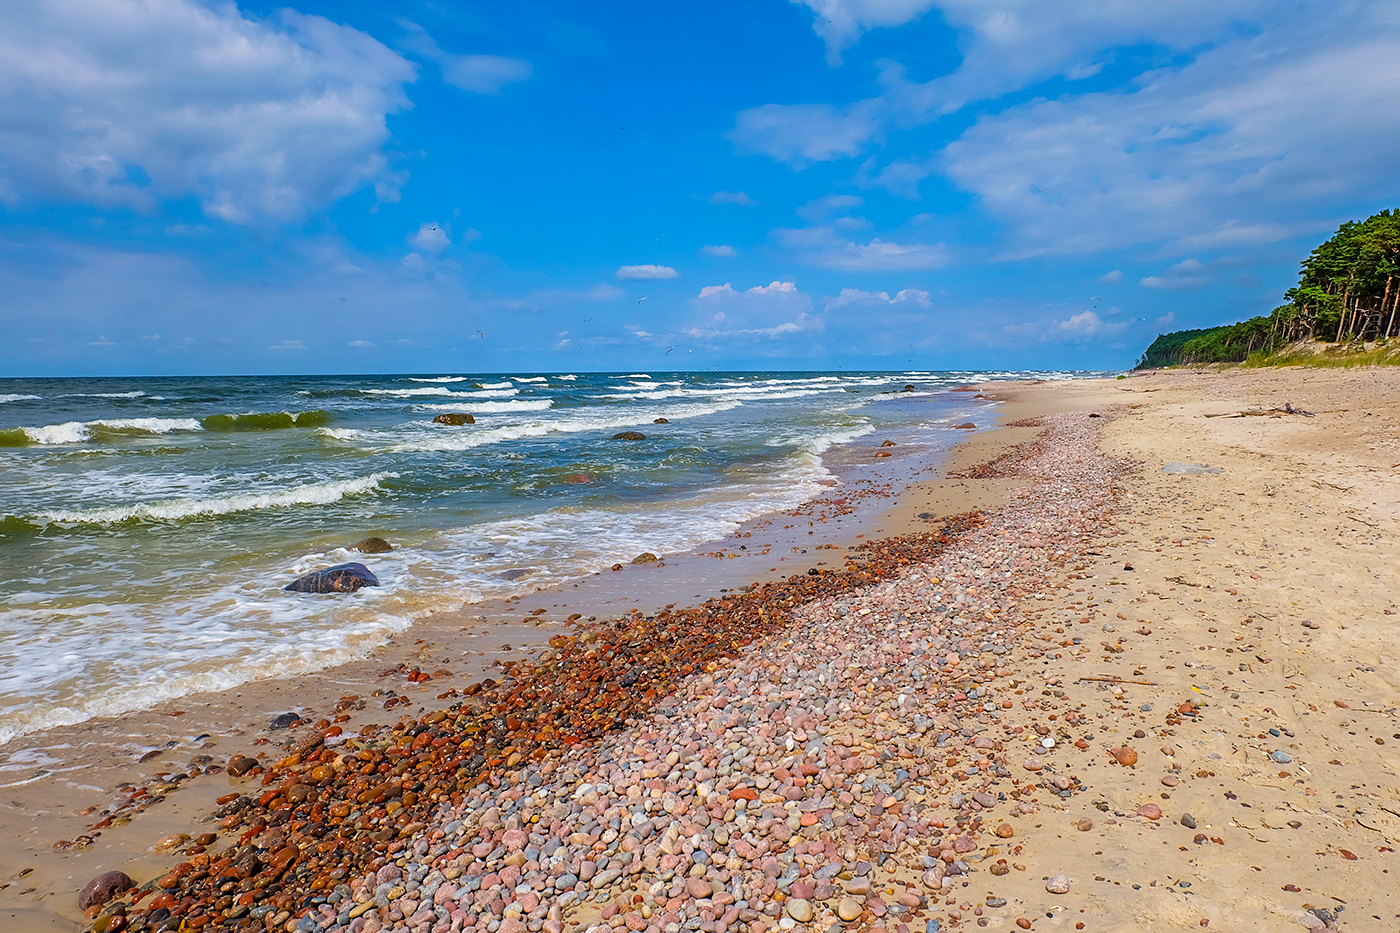 Valokuva Giruliai naturist beachista. pinnalla turkoosi vesi:n kanssa